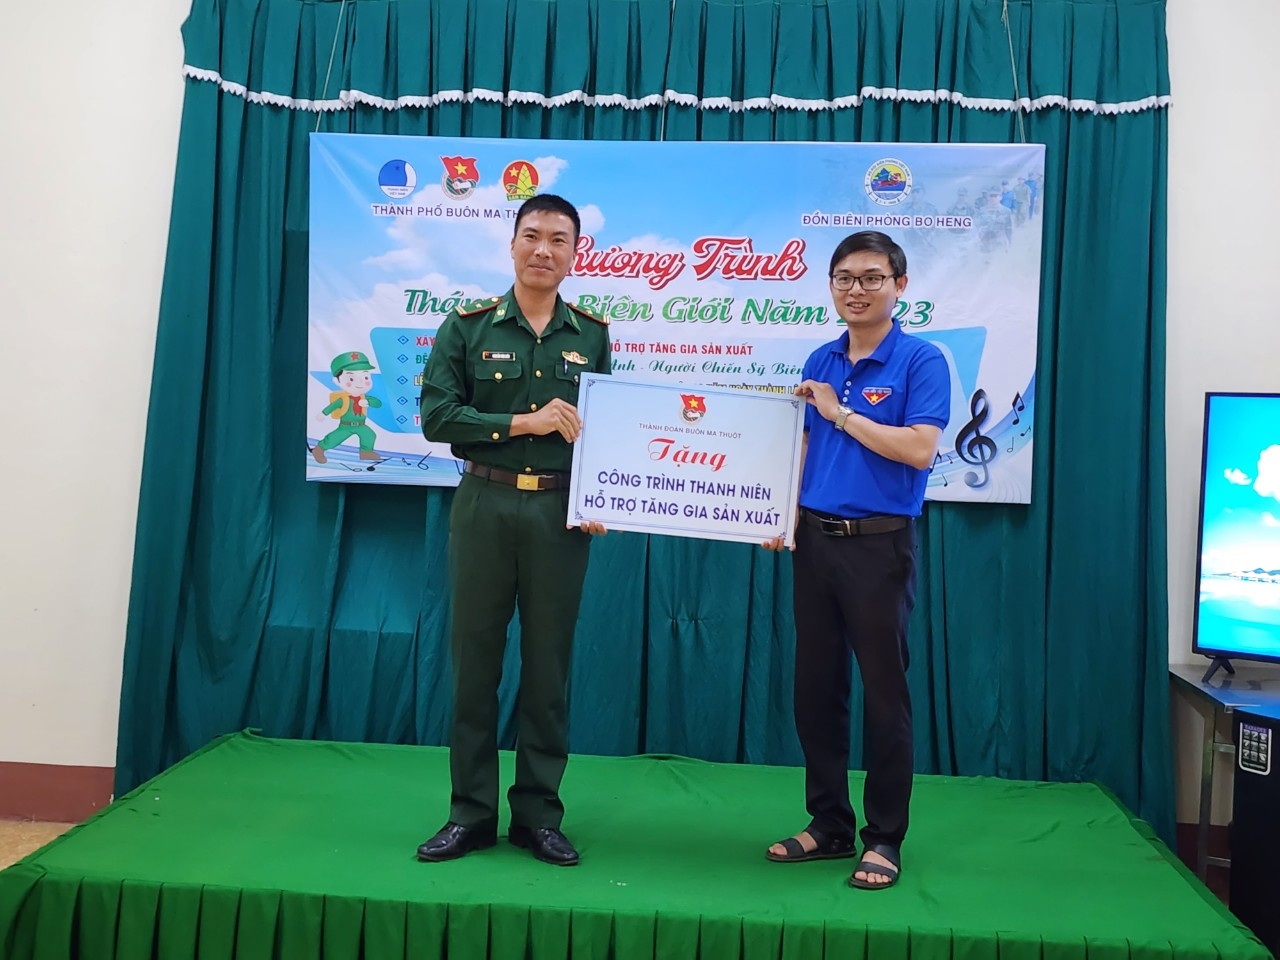 Đại diện Thành đoàn Buôn Ma Thuột tặng công trình thanh niên cho Đồn Biên phòng Bo Heng